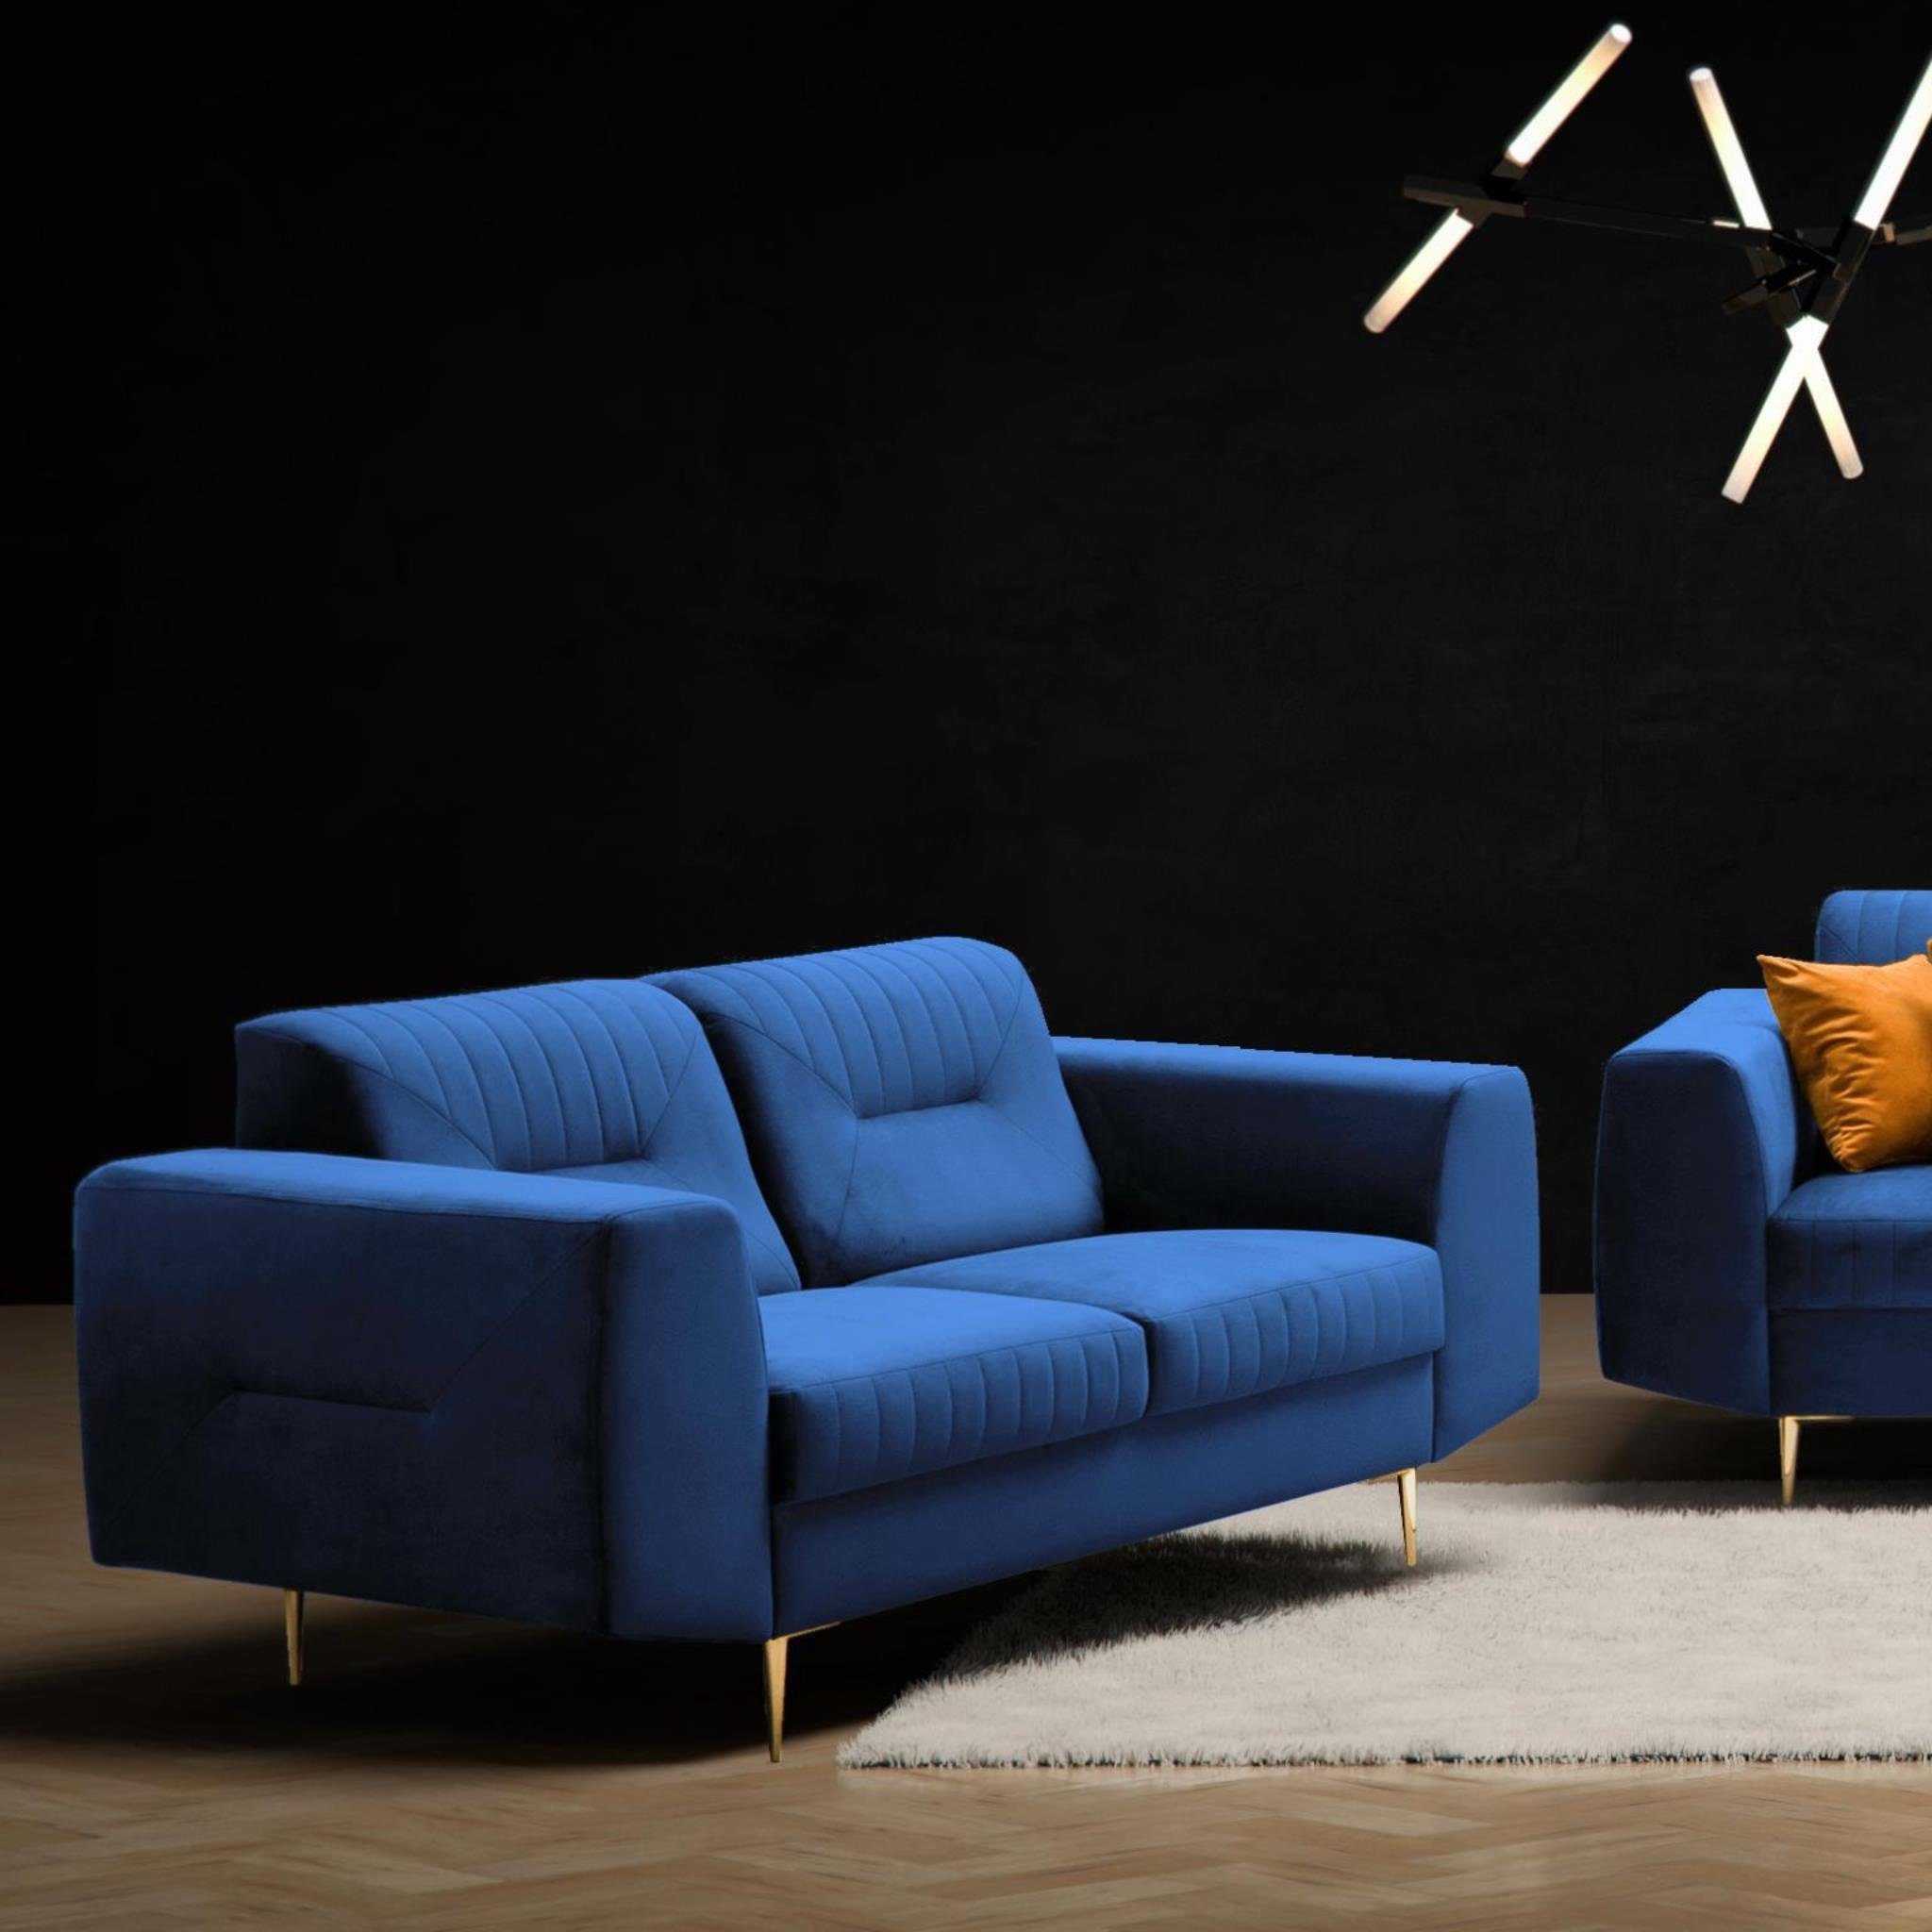 Beautysofa 2-Sitzer VENEZIA, Relaxsofa im modernes Design, mit Metallbeine, Zweisitzer Sofa aus Velours Marineblau (solo 263)